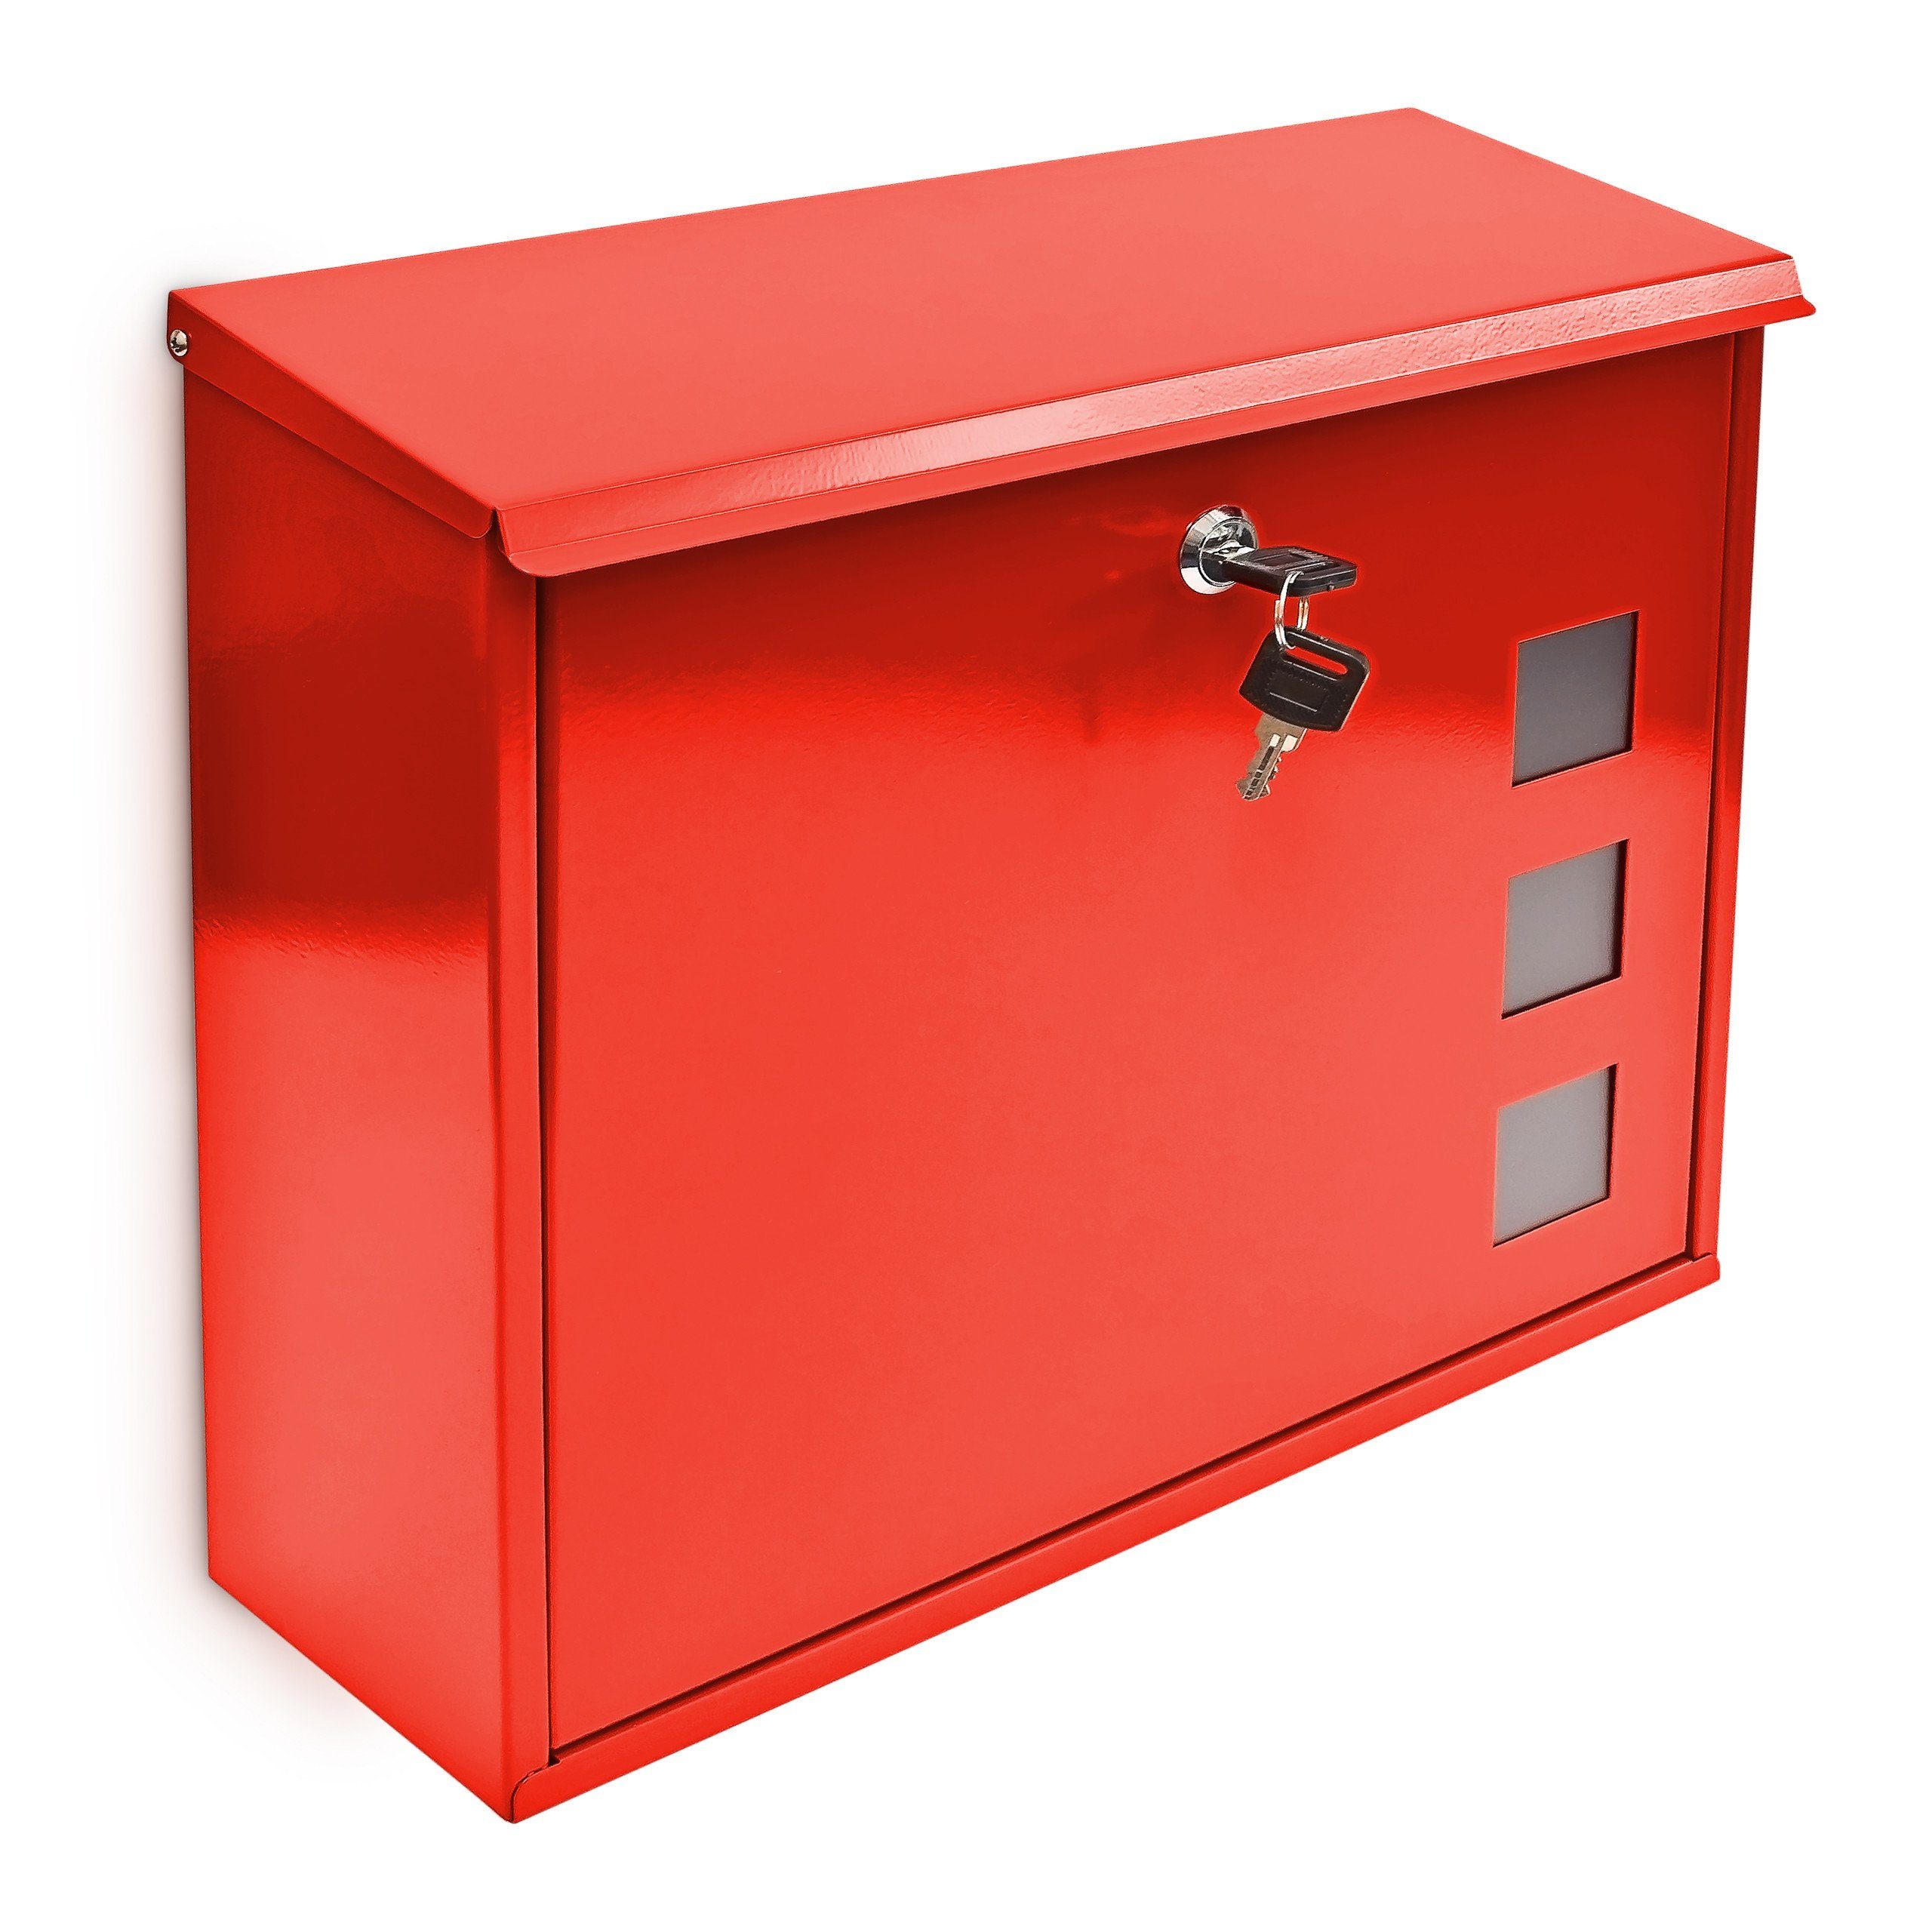 relaxdays Briefkasten Briefkasten Metall 3 Rot Silber Fenster Farbauswahl, Rot